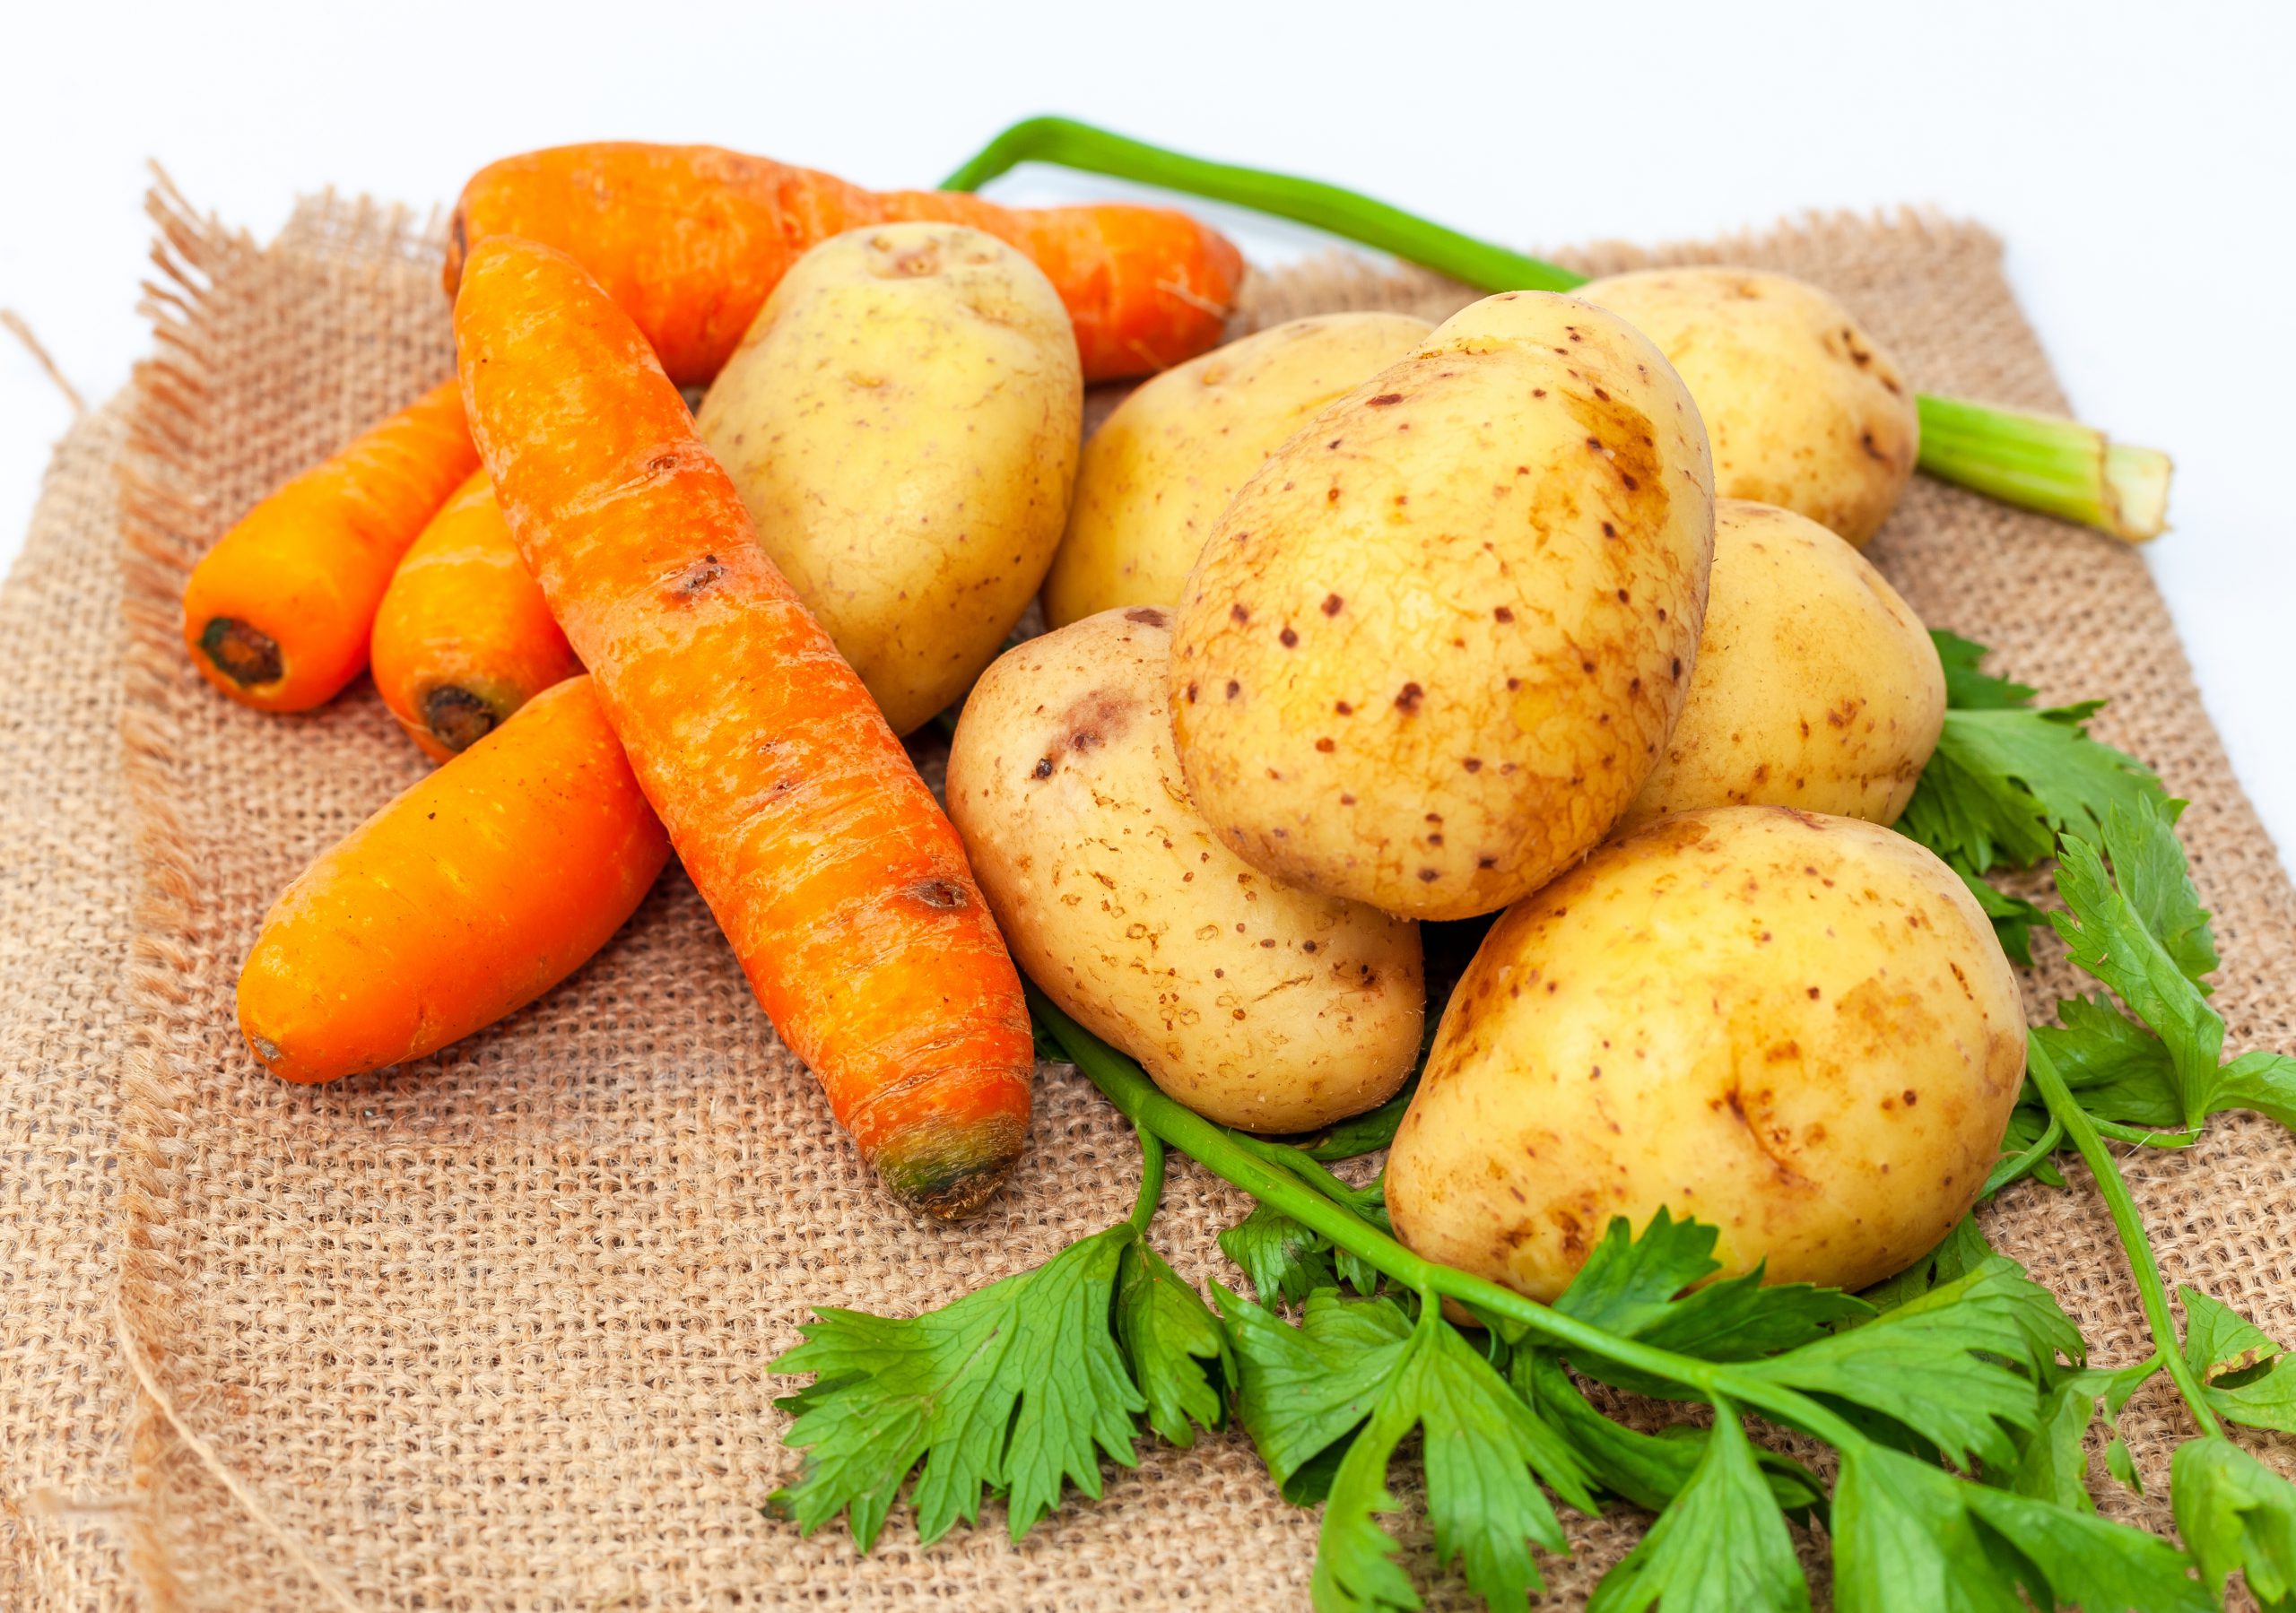 Khoai tây và cà rốt là nhóm thực phẩm giàu vitamin